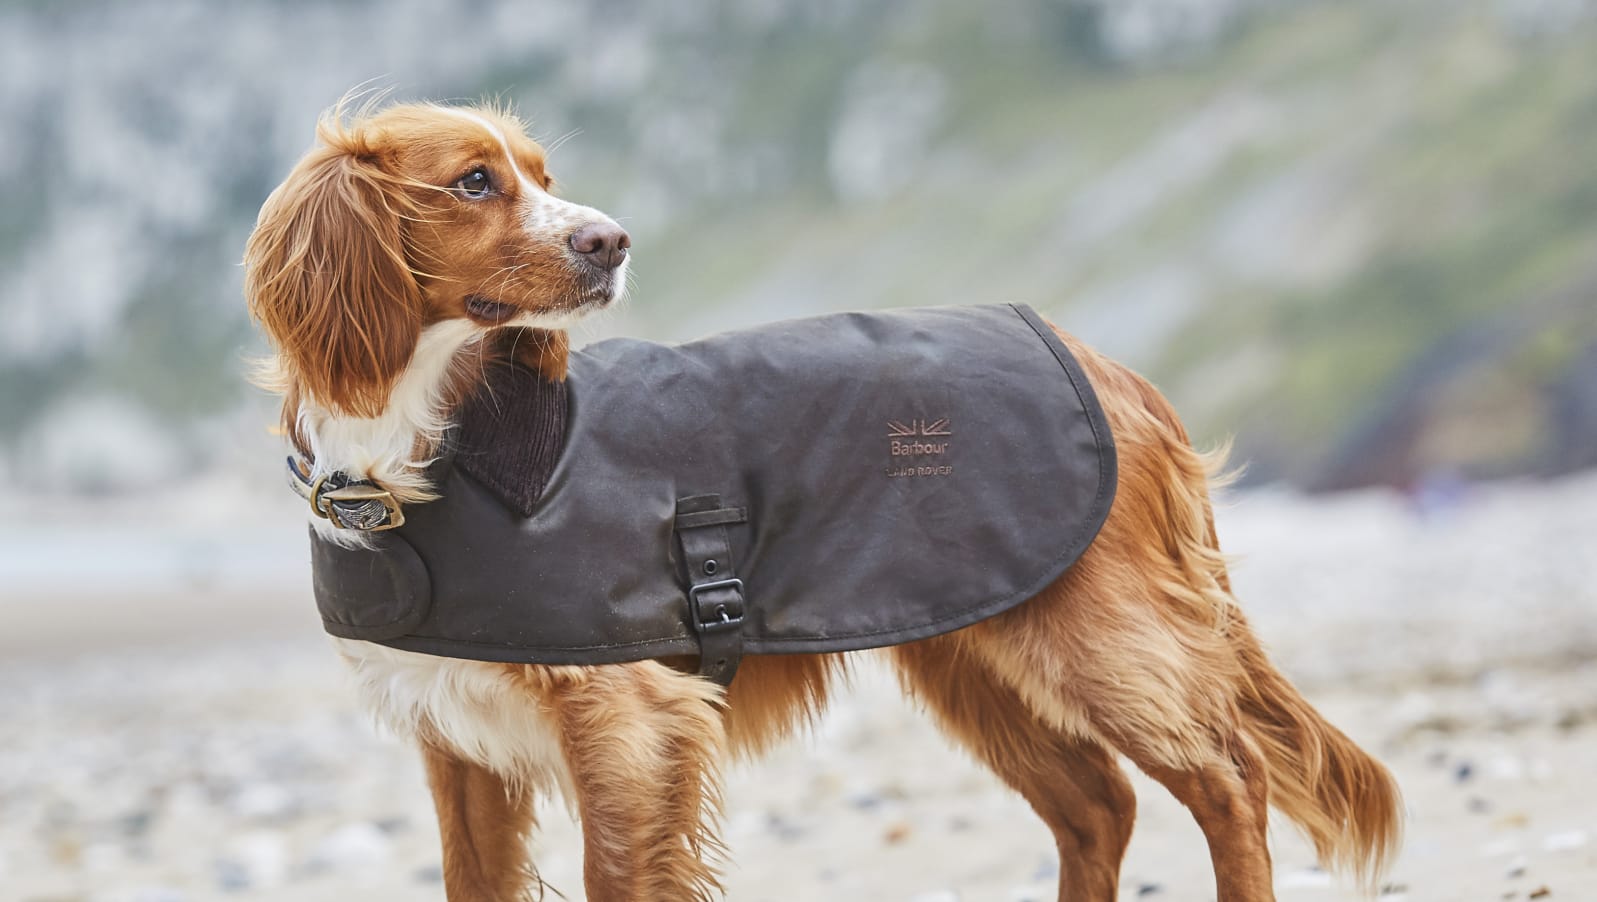 barbour landrover dog coat